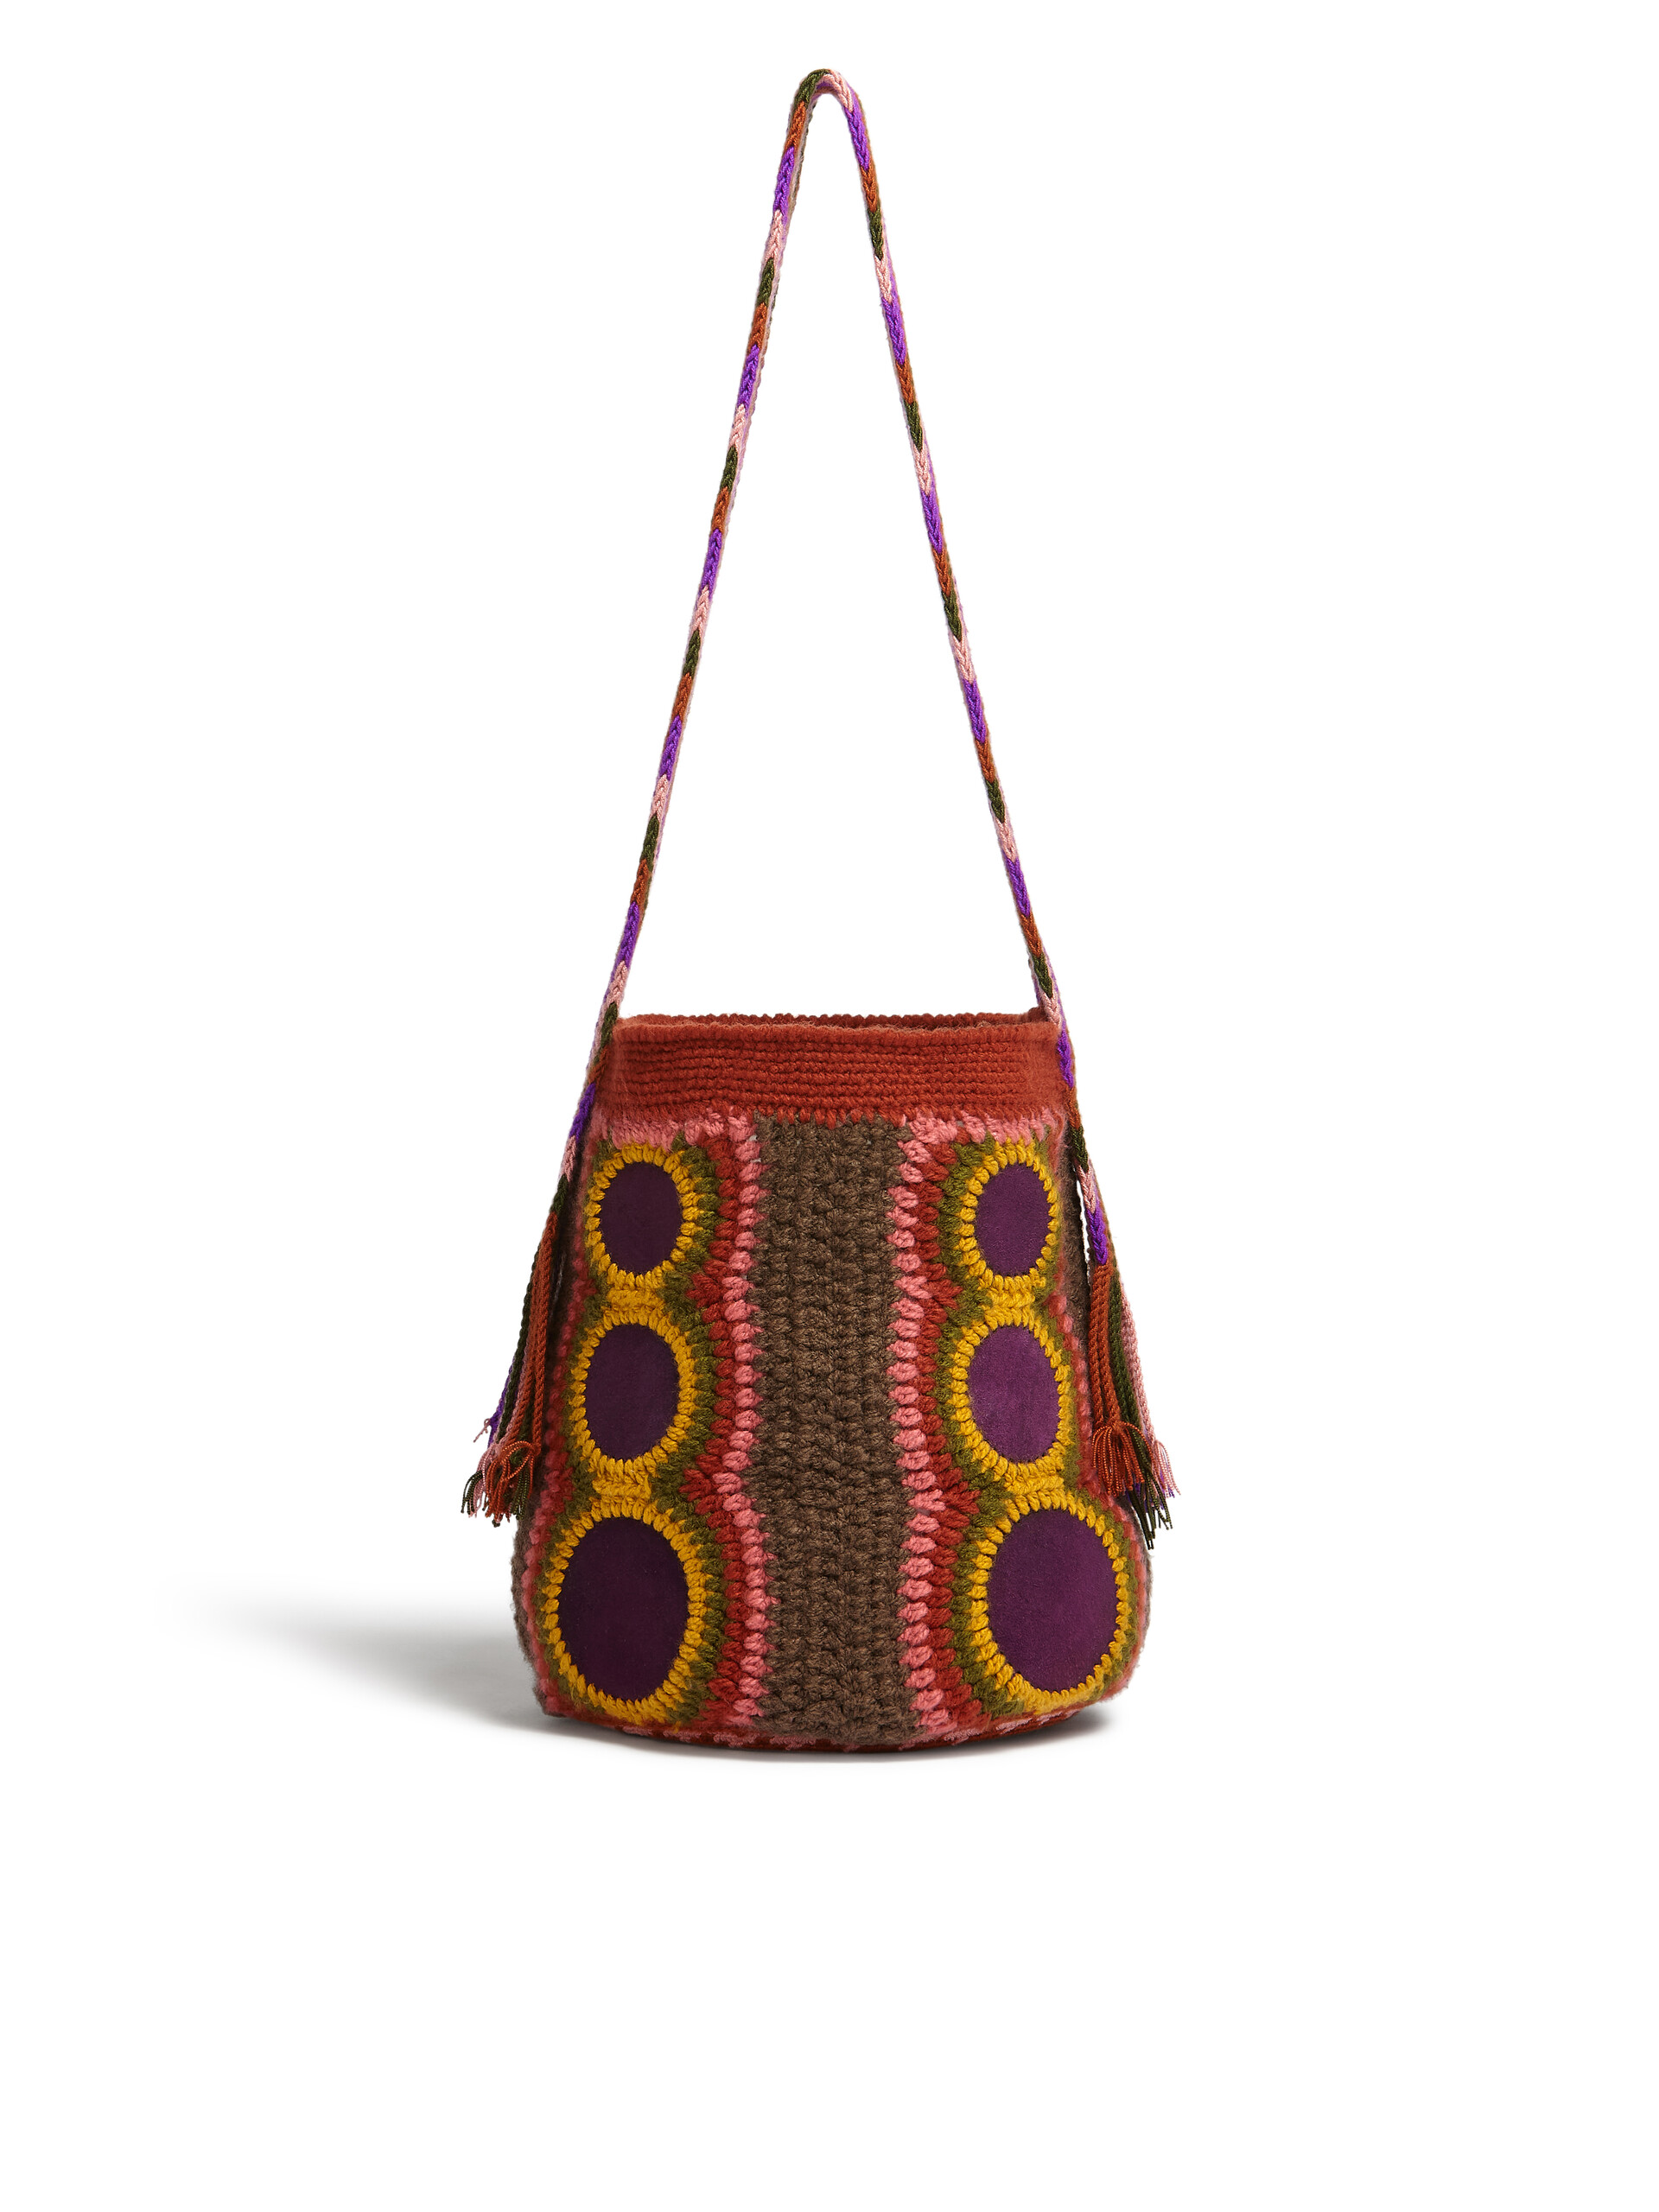 MARNI MARKET Tasche aus technischer Wolle in Braun und Violett - Shopper - Image 3